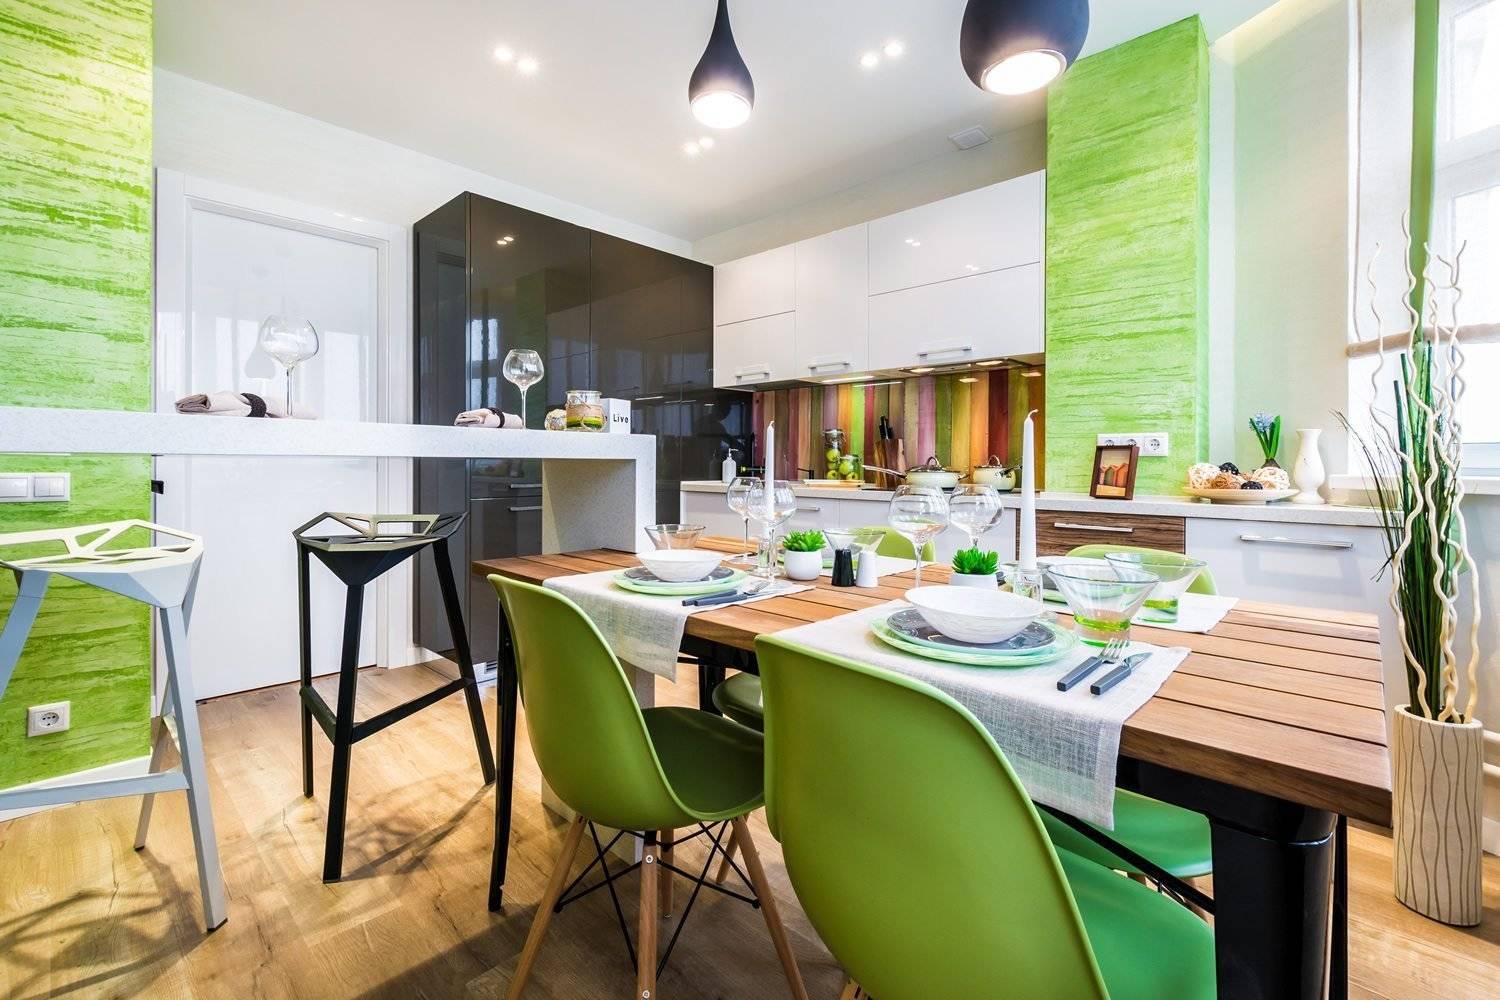 Фотообои на кухню, расширяющие пространство в интерьере: возле стола, фото